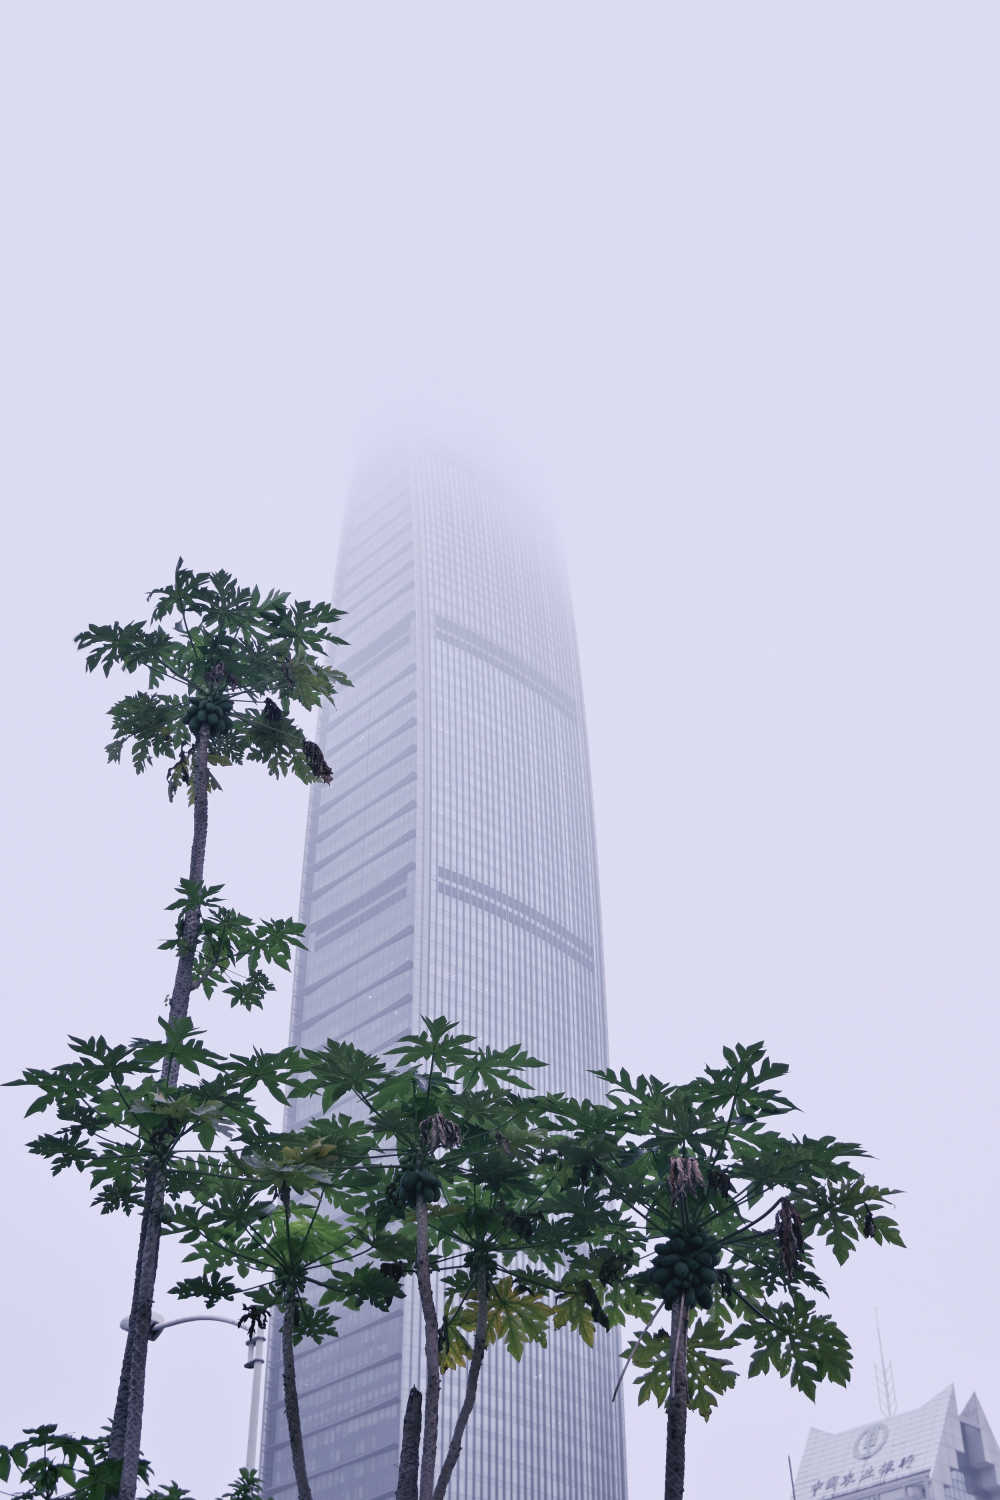 高耸入云的深圳京基100大厦